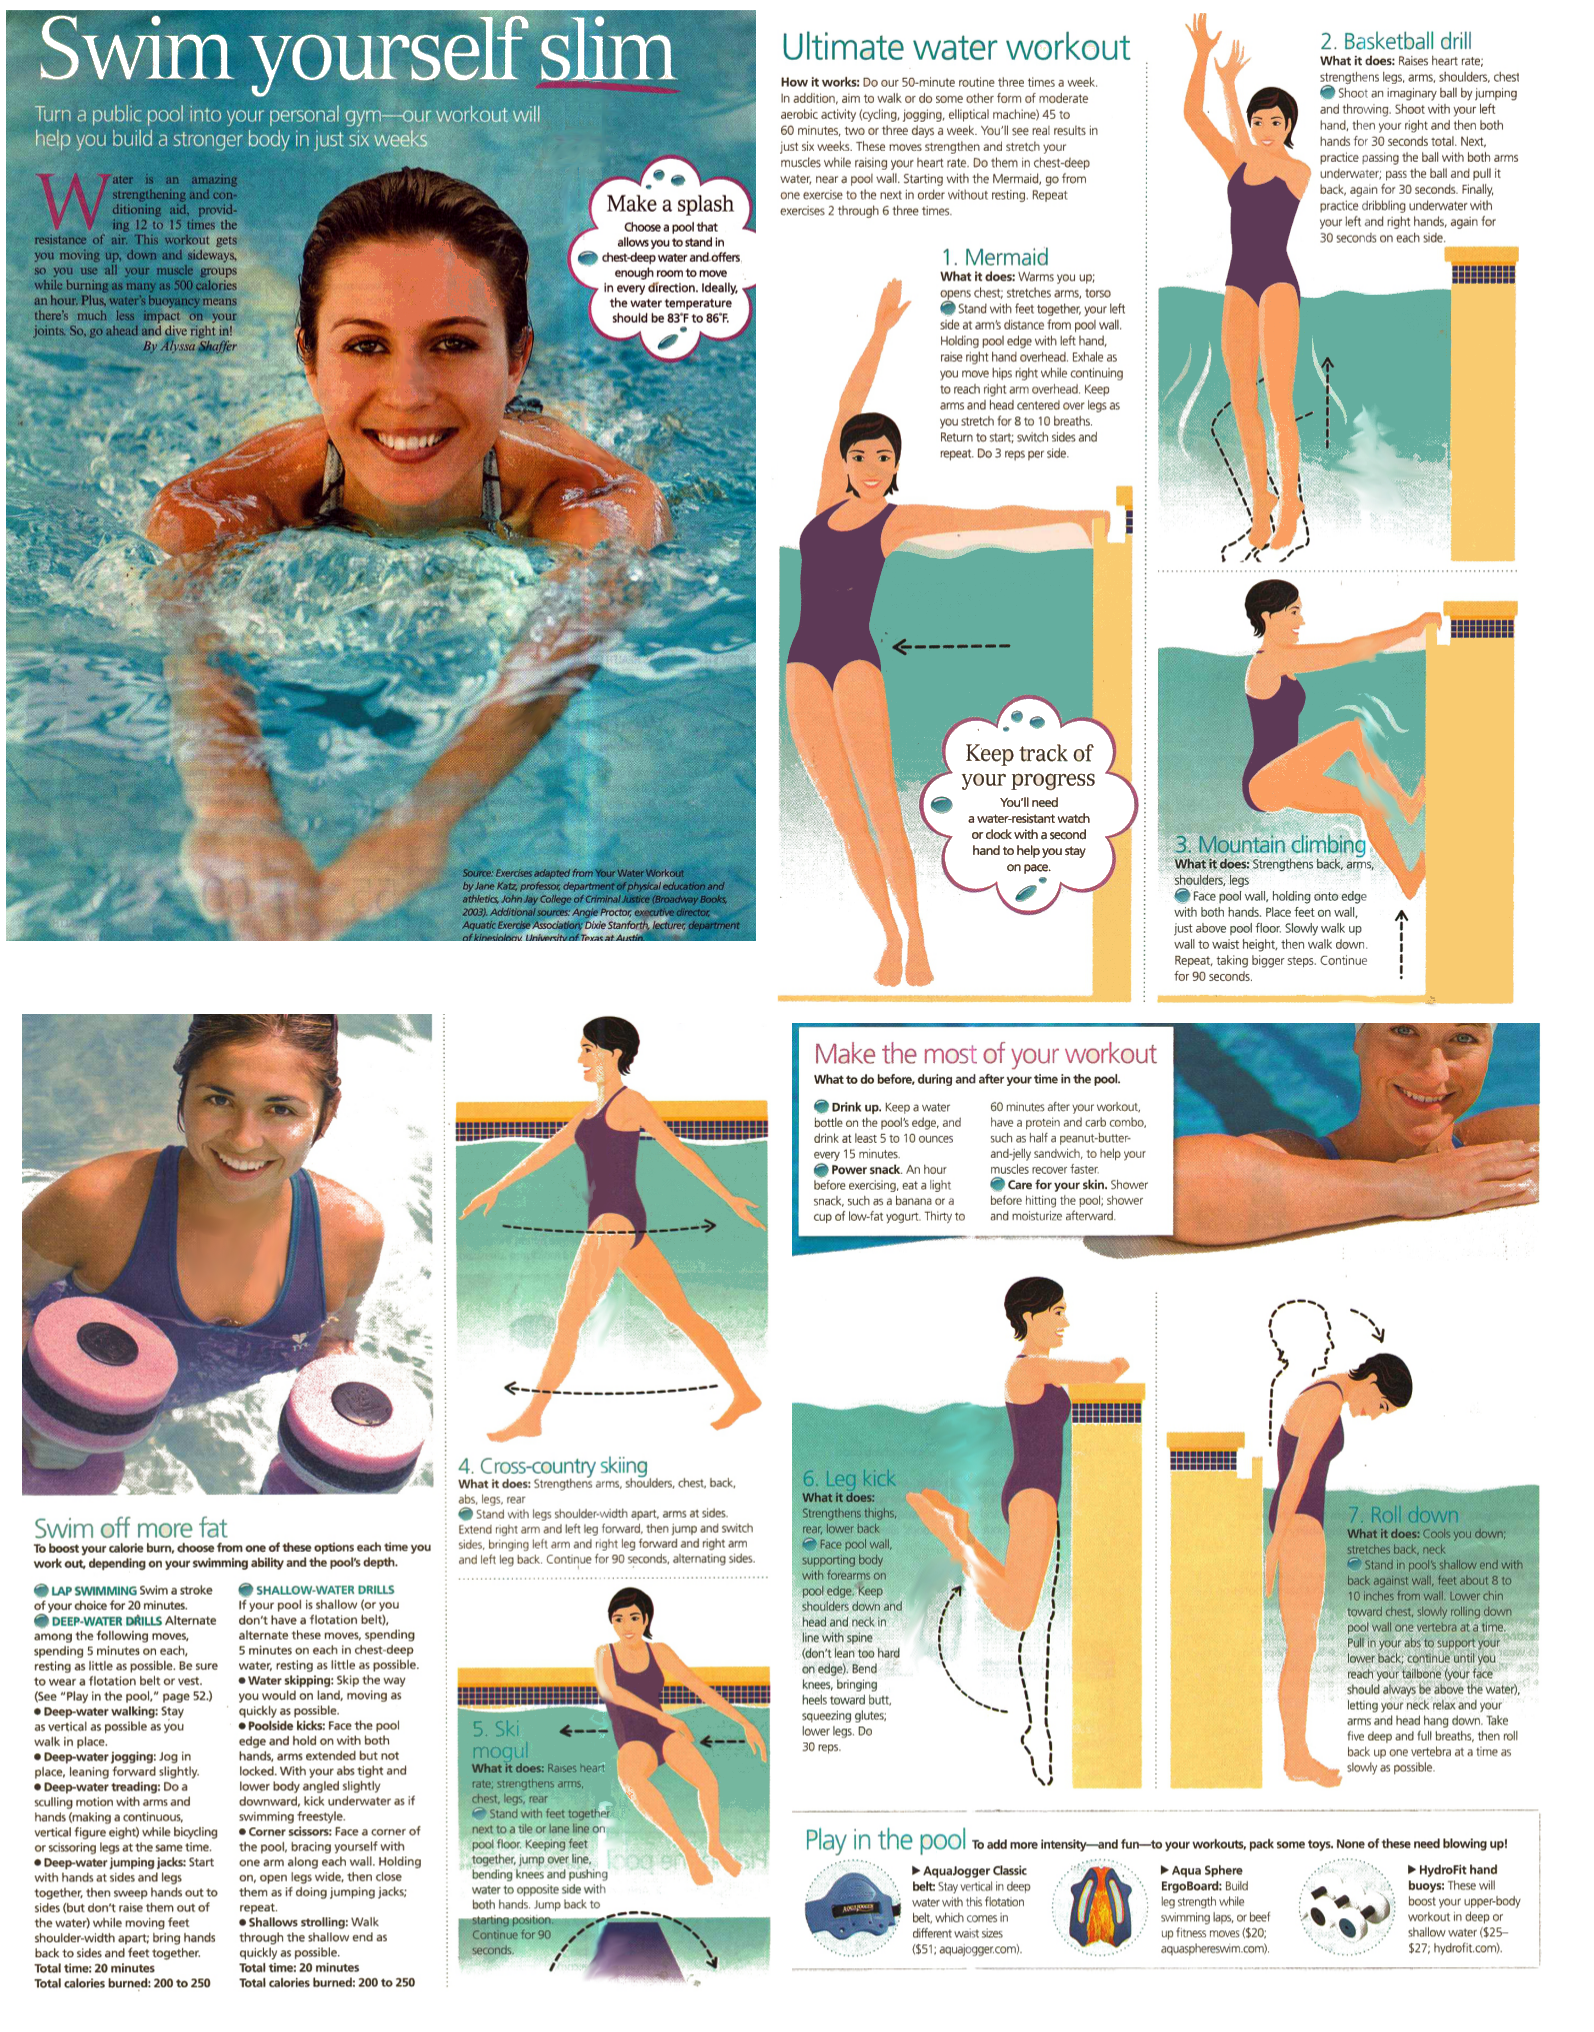 Аквааэробика: комплекс упражнений в бассейне для похудения живота и боков